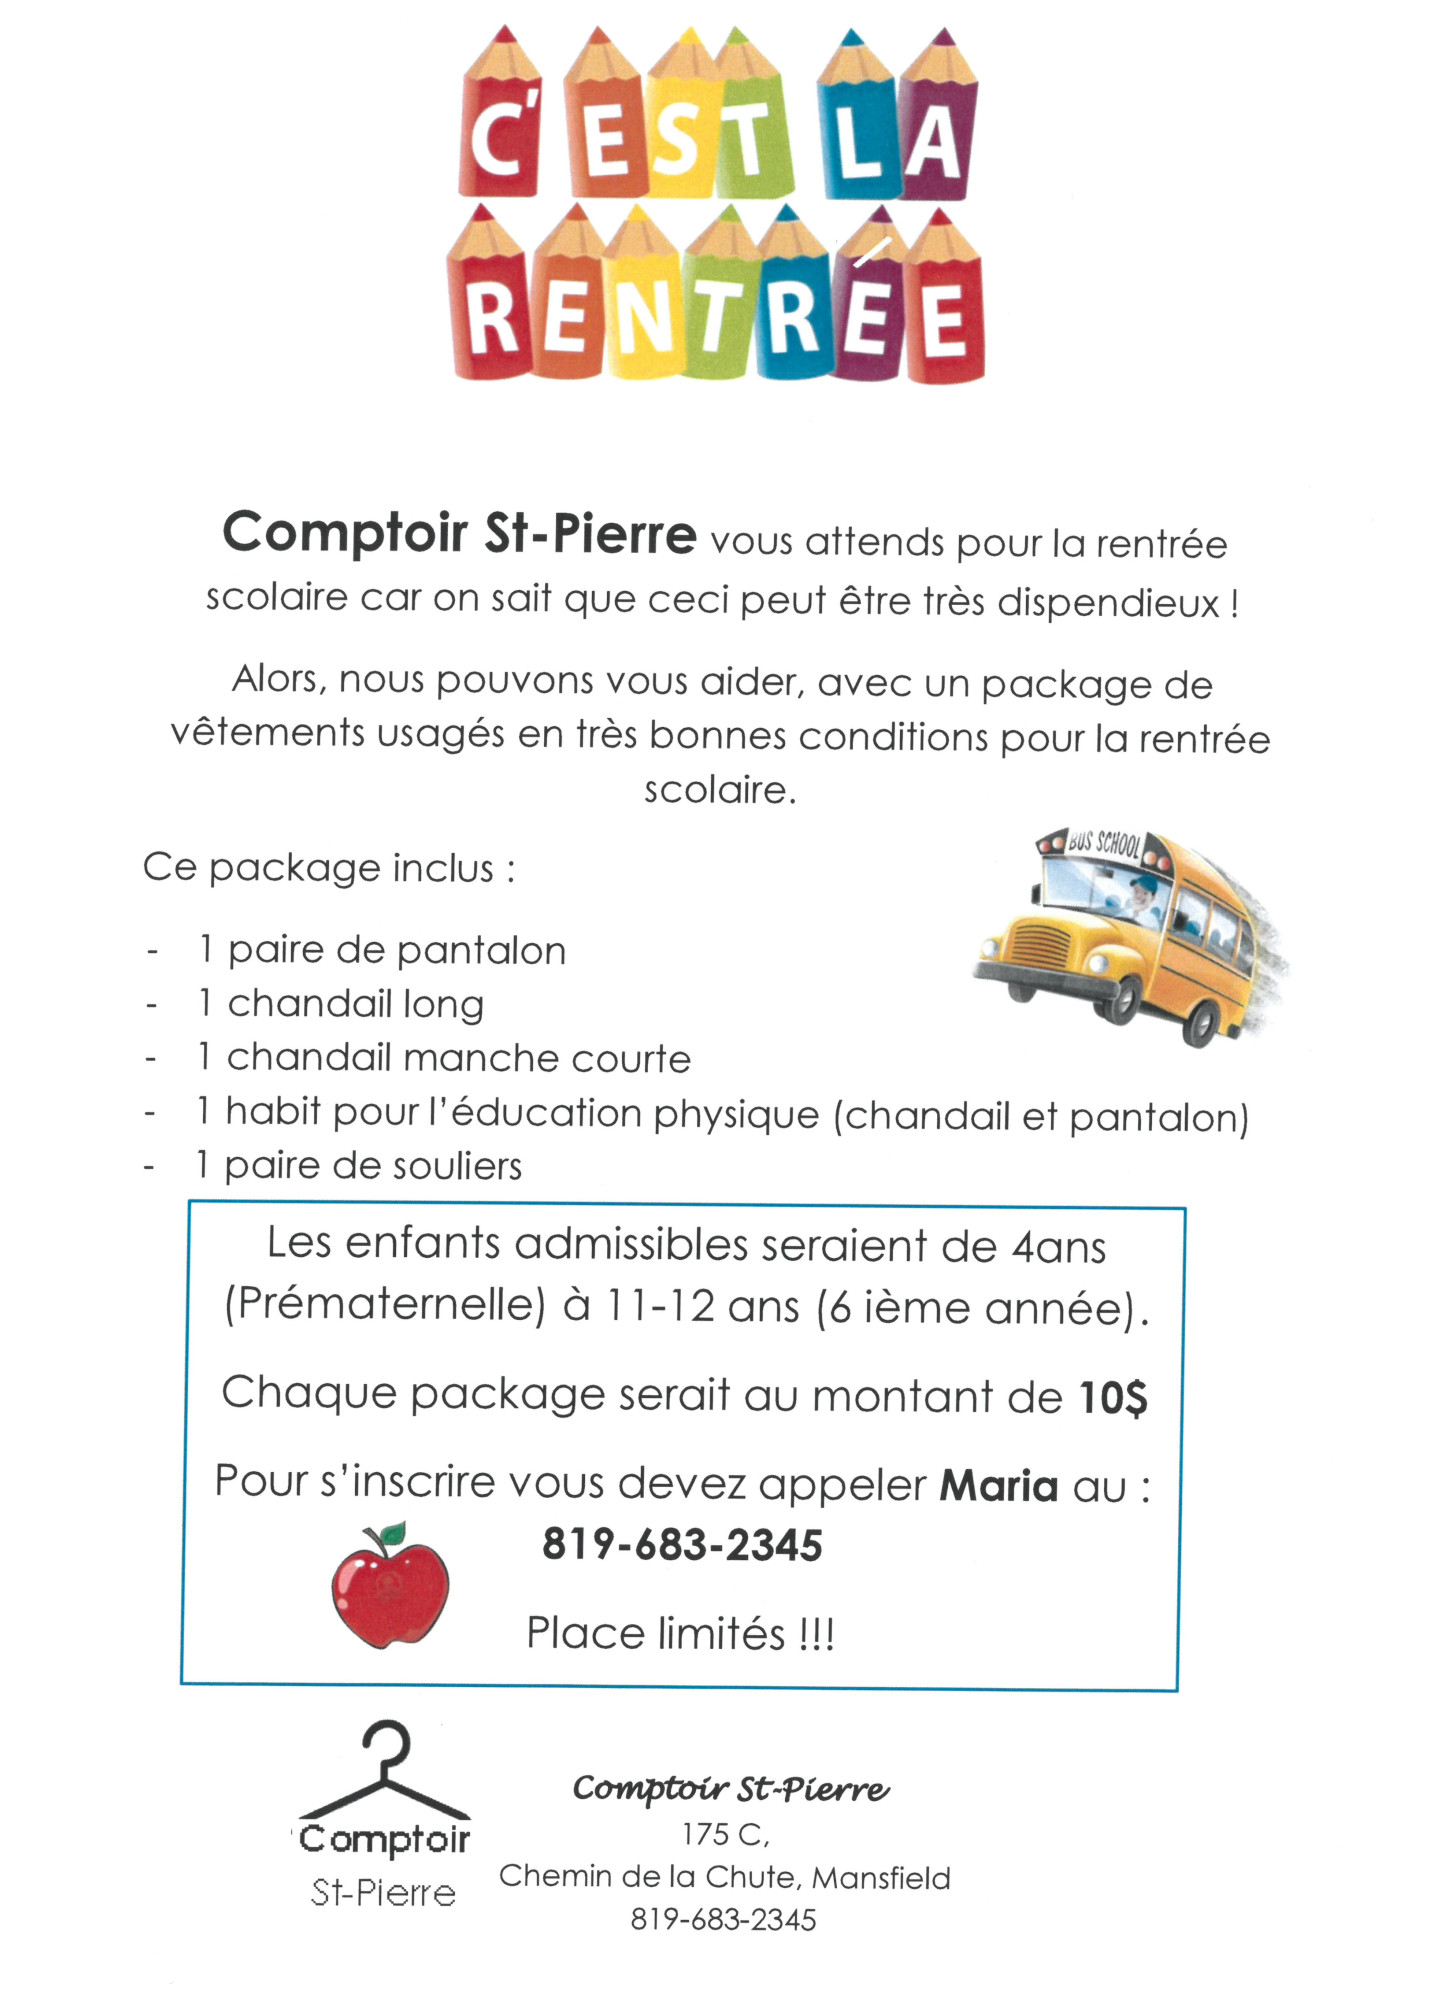 comptoir_st-pierre_rentree_poster_2019_fr-2.jpg